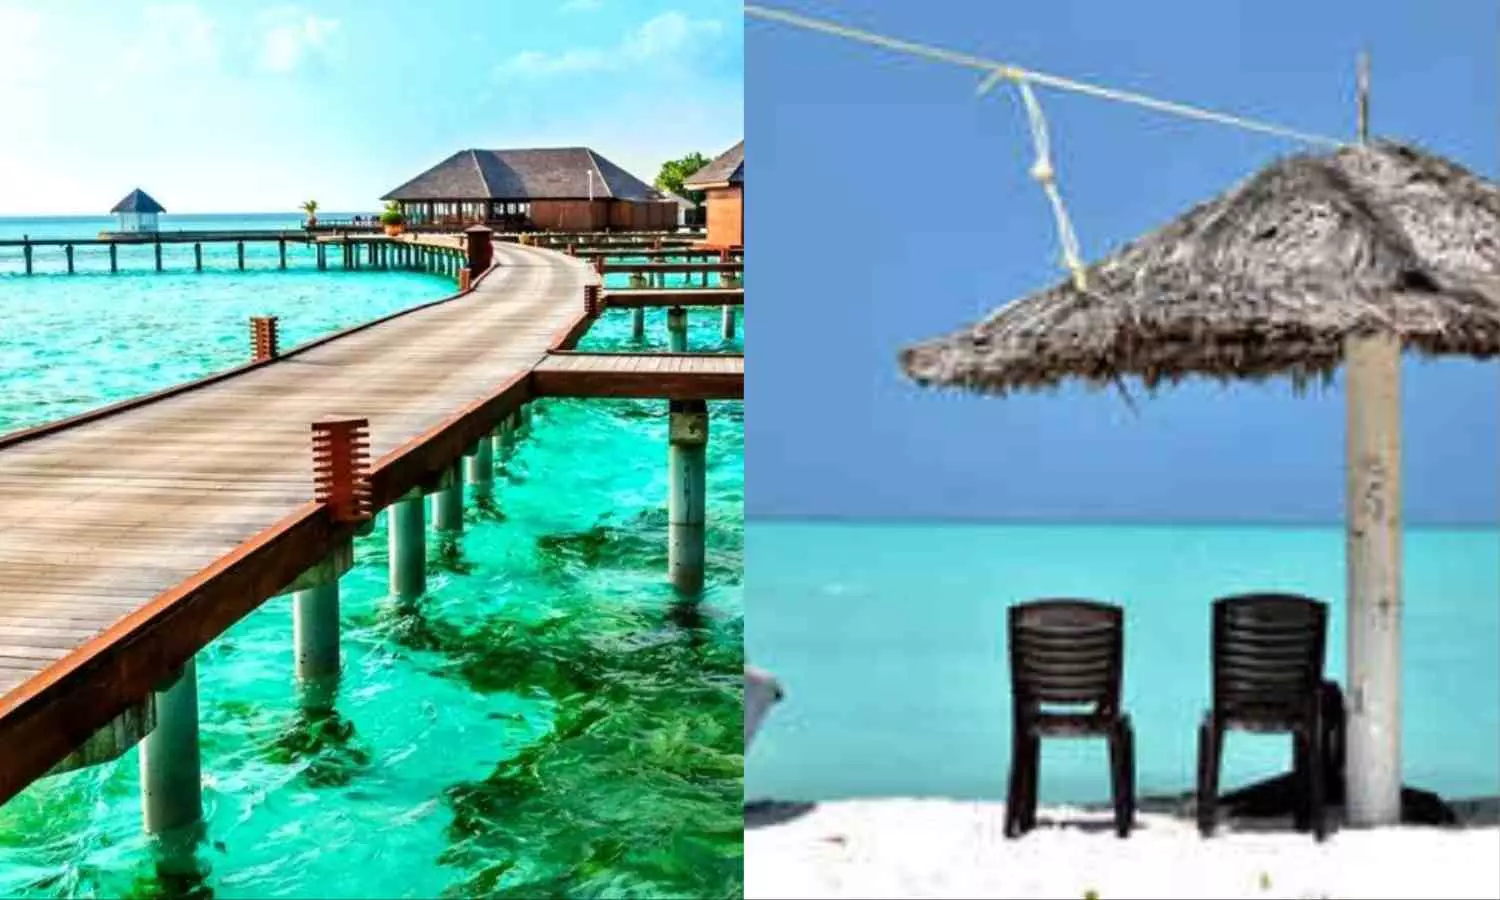 Best Places To Stay in Lakshadweep: ये हैं लक्षद्वीप के सबसे खूबसूरत होटल्स और रिजॉर्ट, खूबसूरती मोह लेगी आपका भी मन